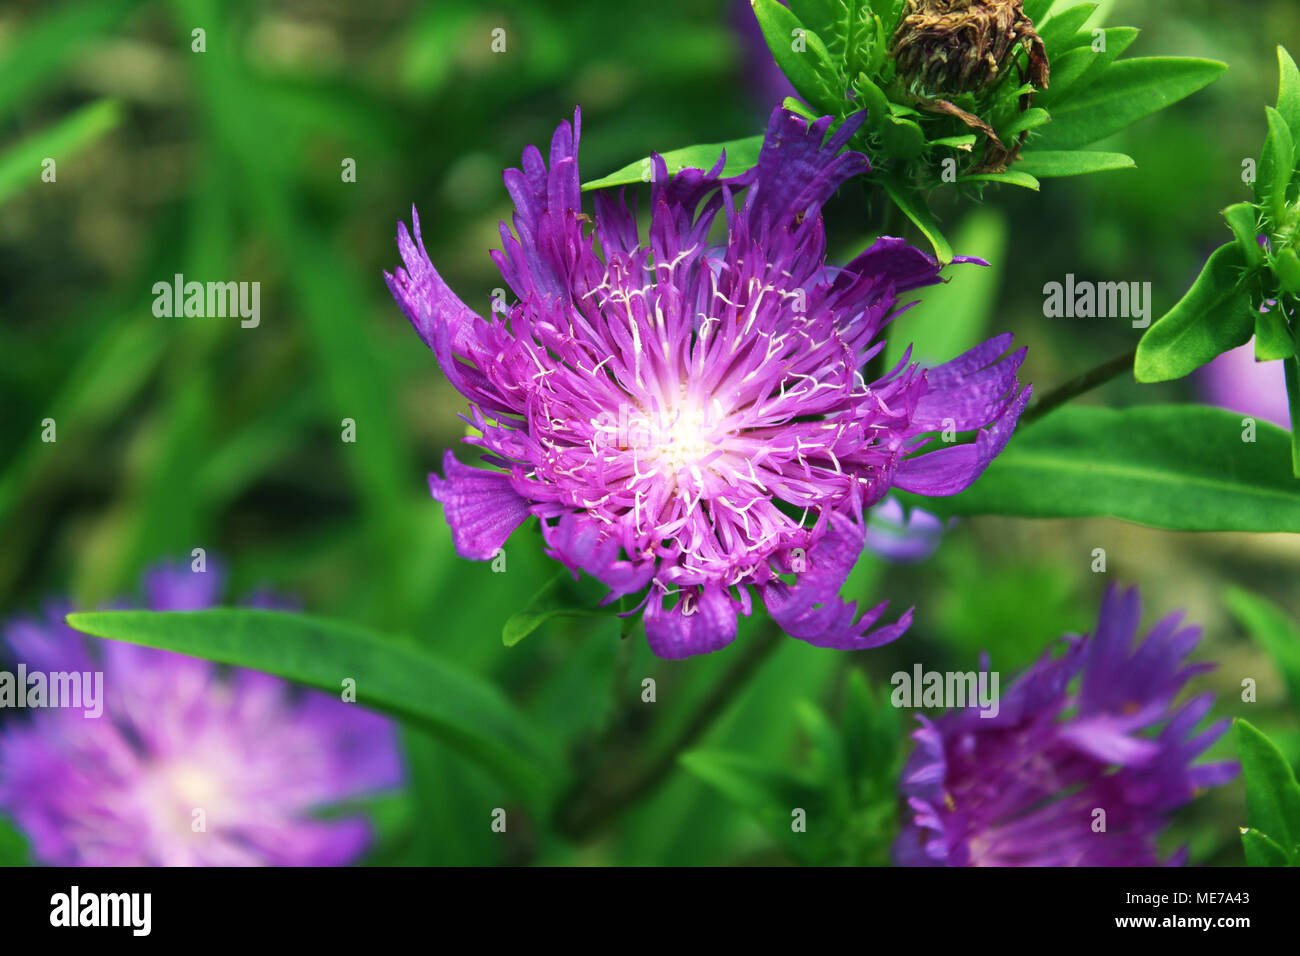 Dieses Bild einer violetten Blume bringt die übersehene Schönheit der Natur zurück. Das Bild, das Sie sehen, gibt Ihnen die Möglichkeit, die Details einer Blume zu beobachten und die Kraft der Natur zu erkennen. Stockfoto